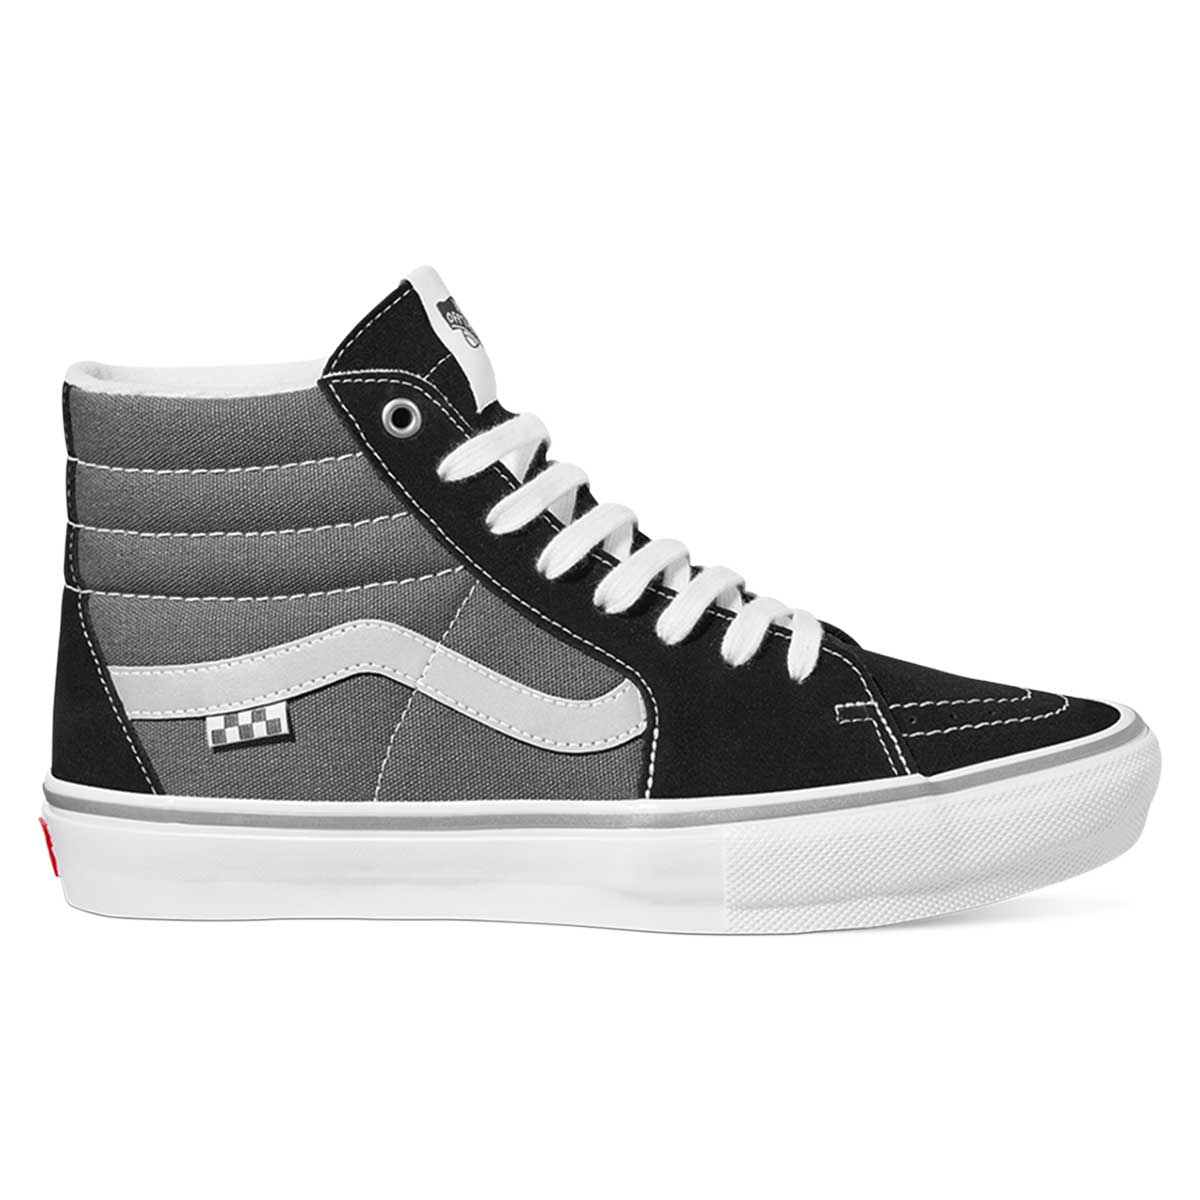 Aanvulling Zeeman Berg kleding op Vans Skate Sk8-Hi Shoes - Reflective Black/Grey | SoCal Skateshop